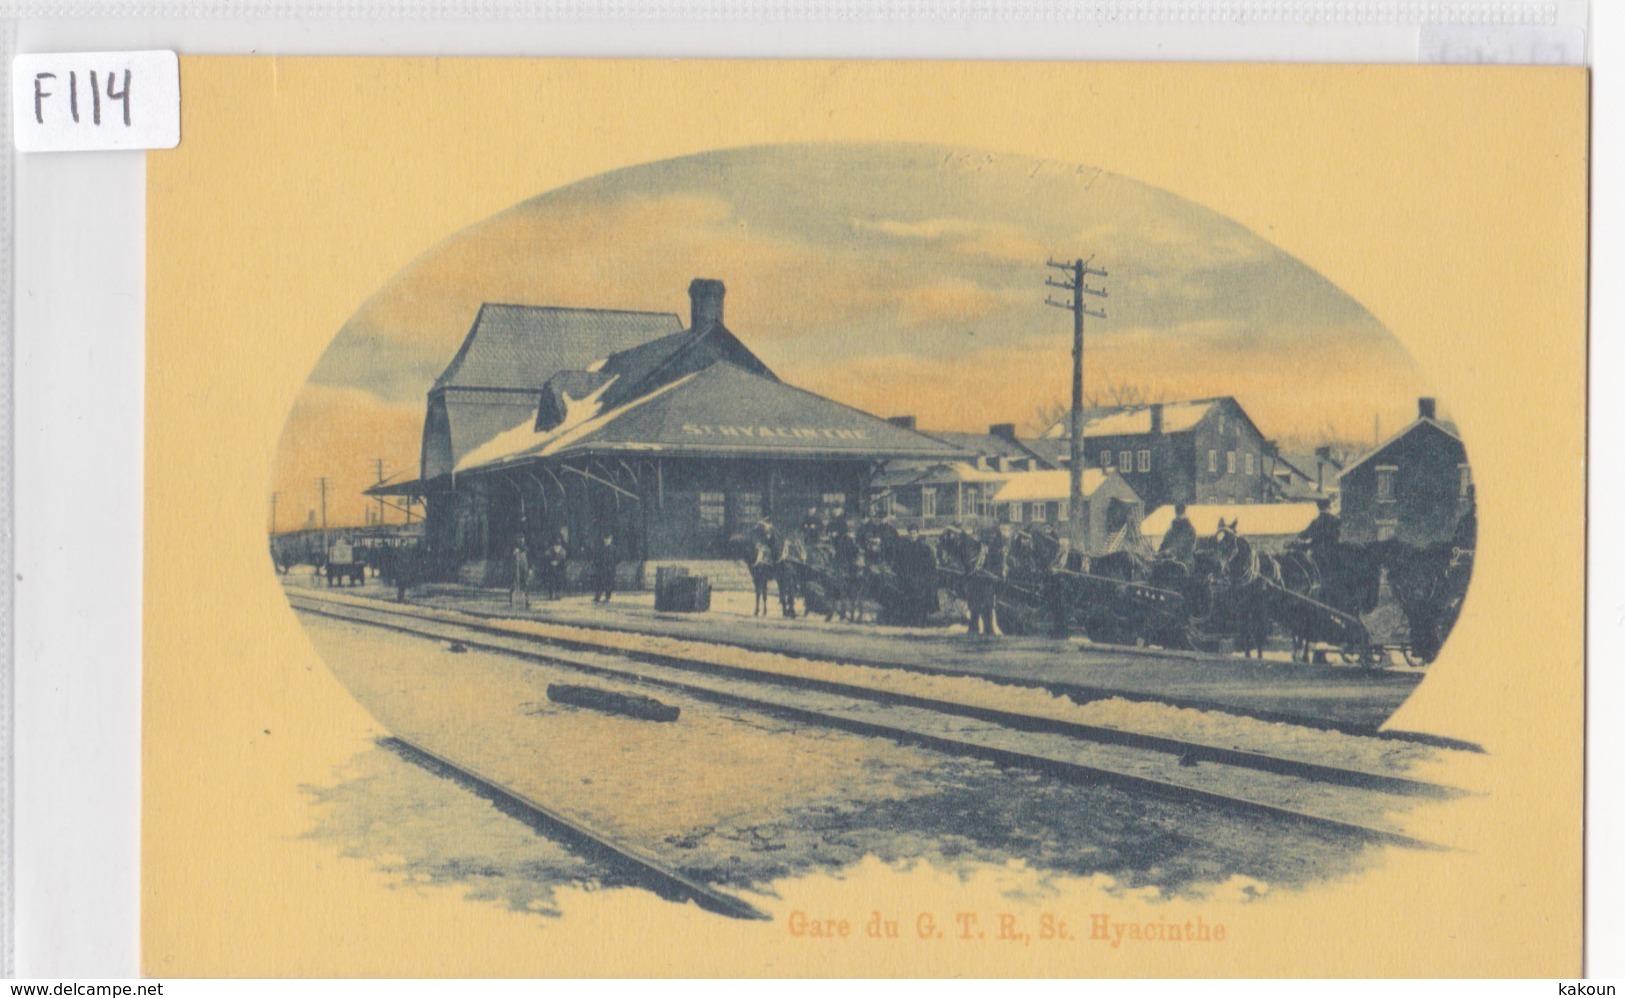 1910 - Gare Du G.T.R., St. Hyacinthe, Québec, E.H. Richer & Fils  (F114) - St. Hyacinthe